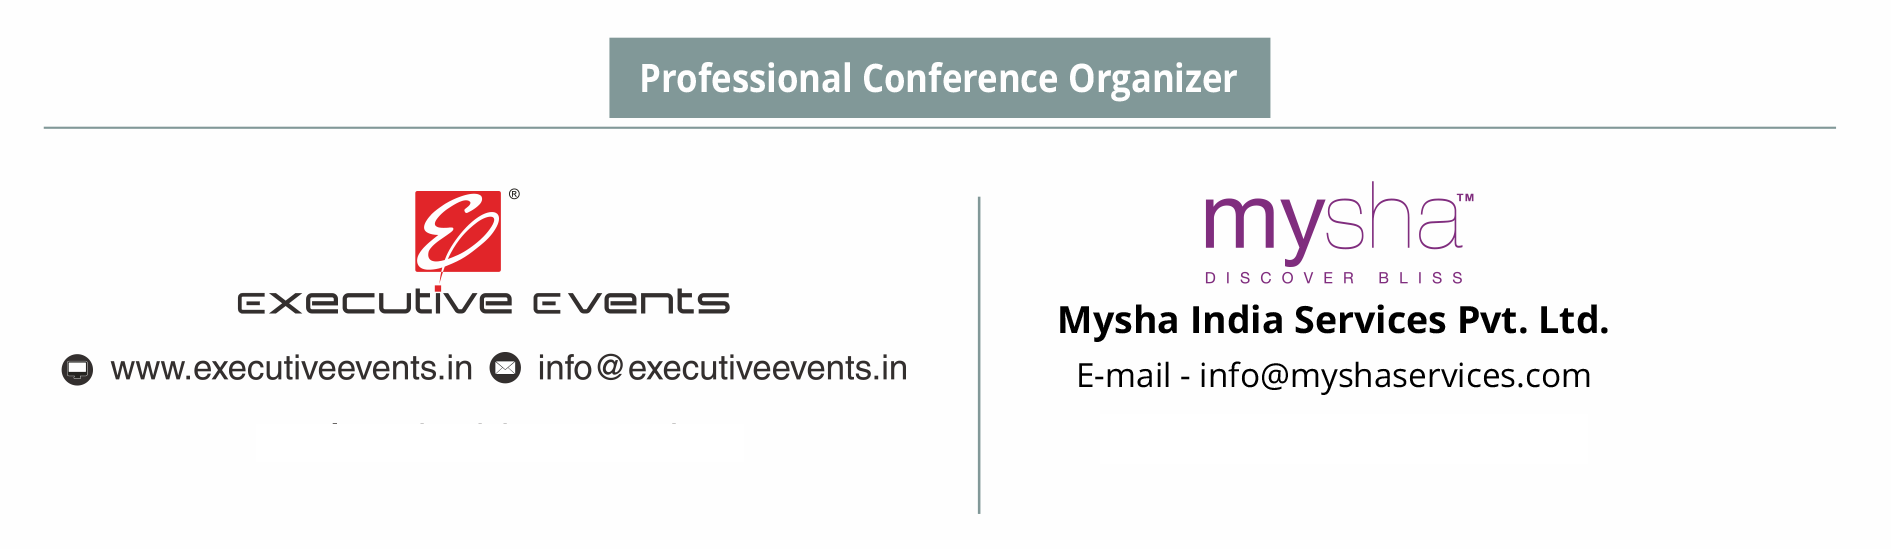 executive events logo